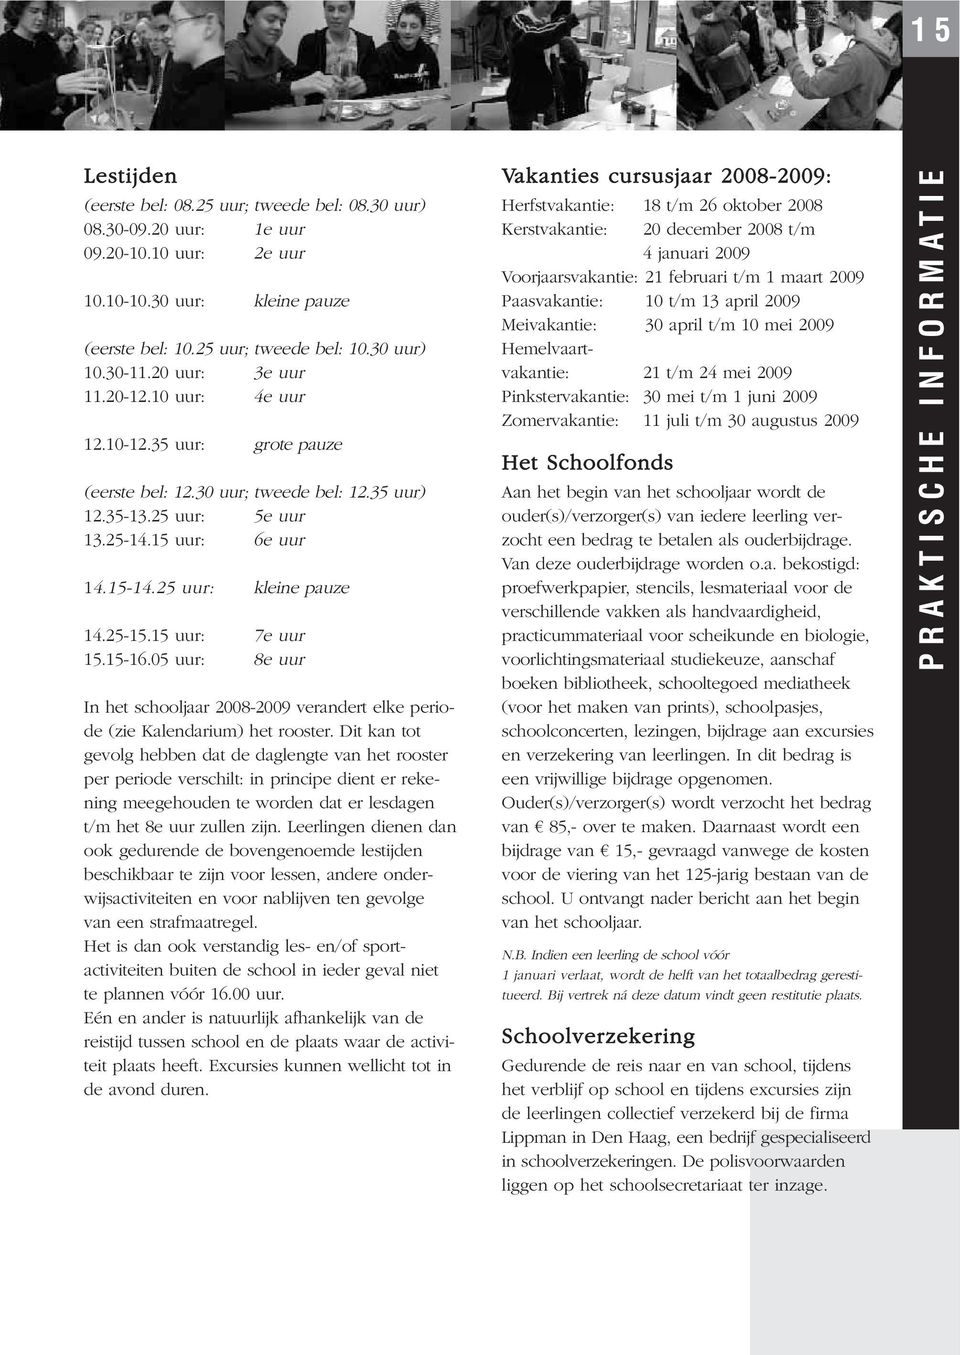 25-15.15 uur: 7e uur 15.15-16.05 uur: 8e uur In het schooljaar 2008-2009 verandert elke periode (zie Kalendarium) het rooster.